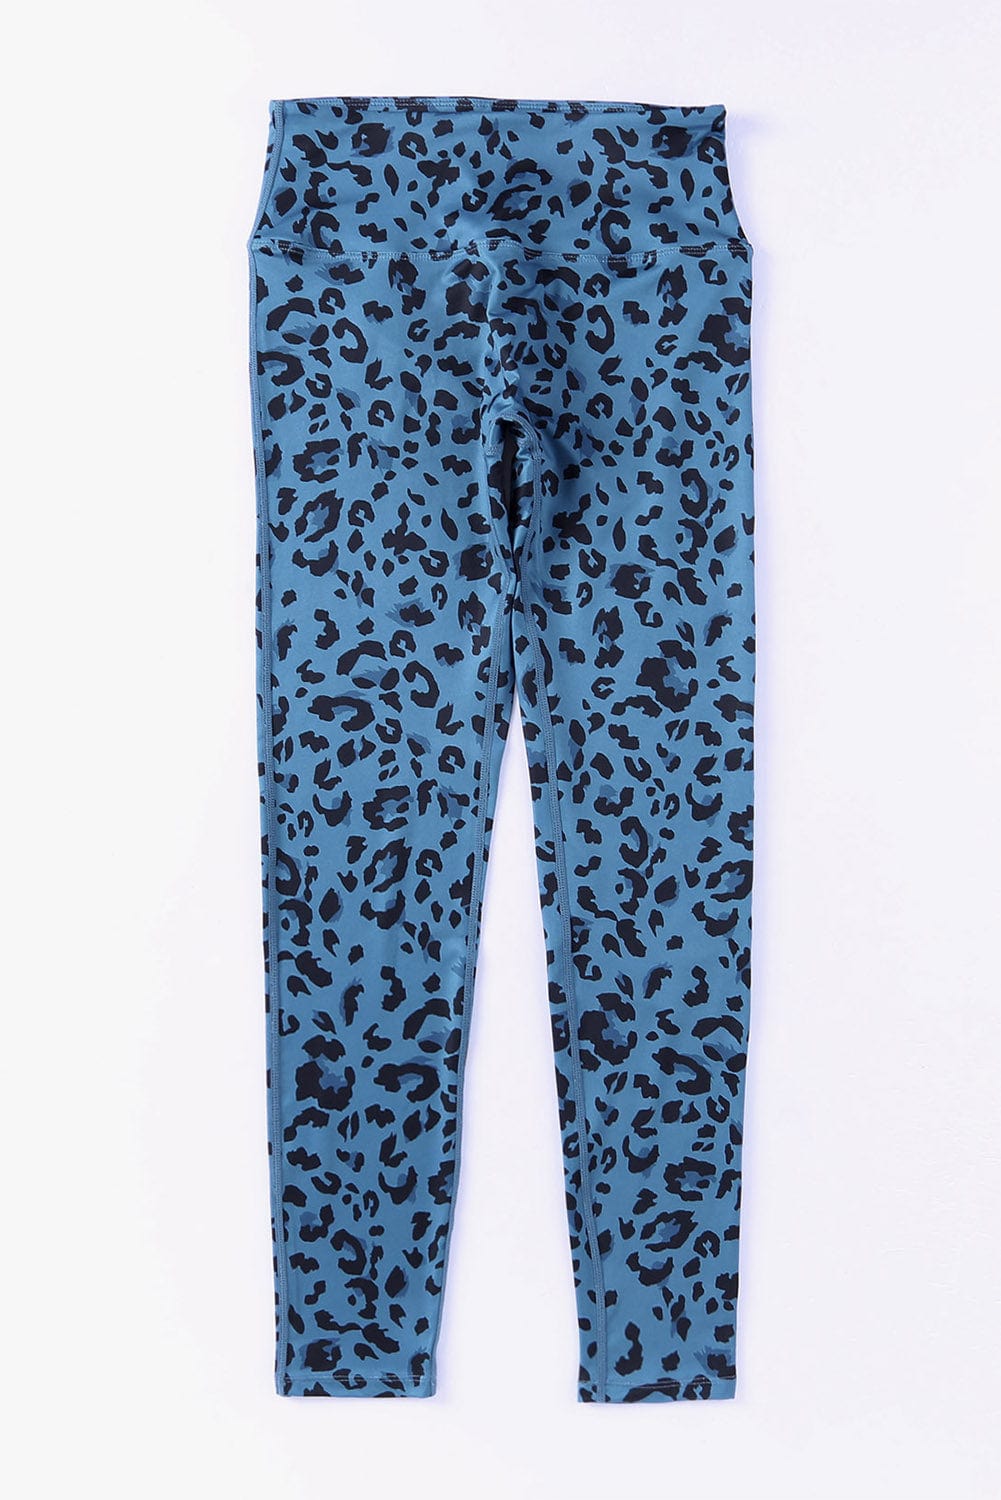 Leopard Print Wide Waistband Leggings - Body By J'ne